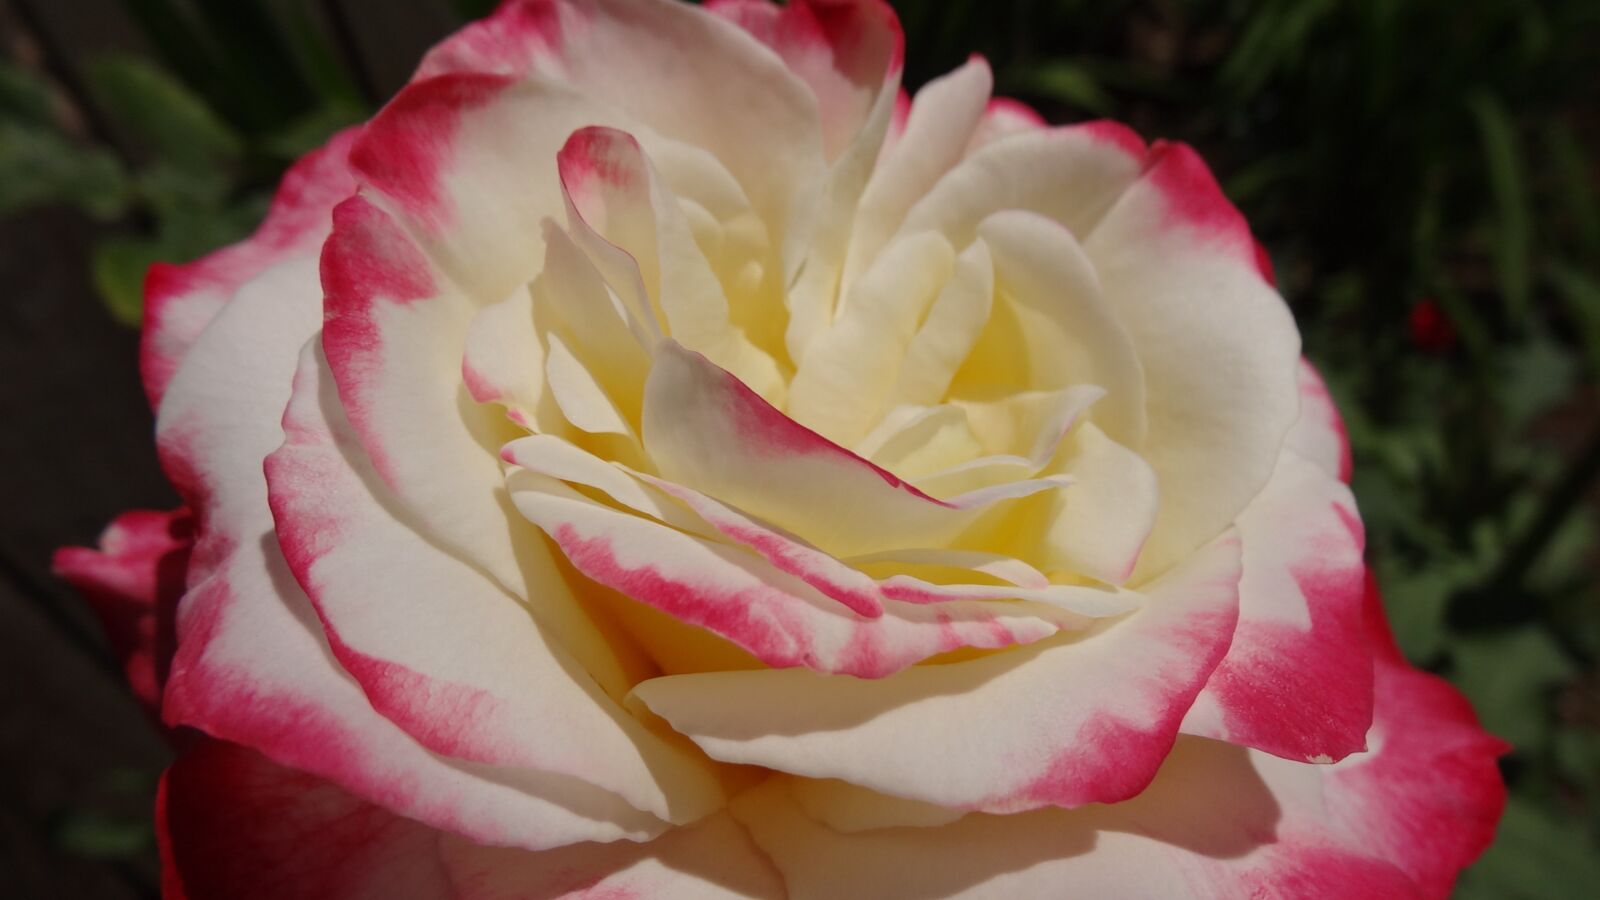 Sony Cyber-shot DSC-HX20V sample photo. Flower, petal, rose photography